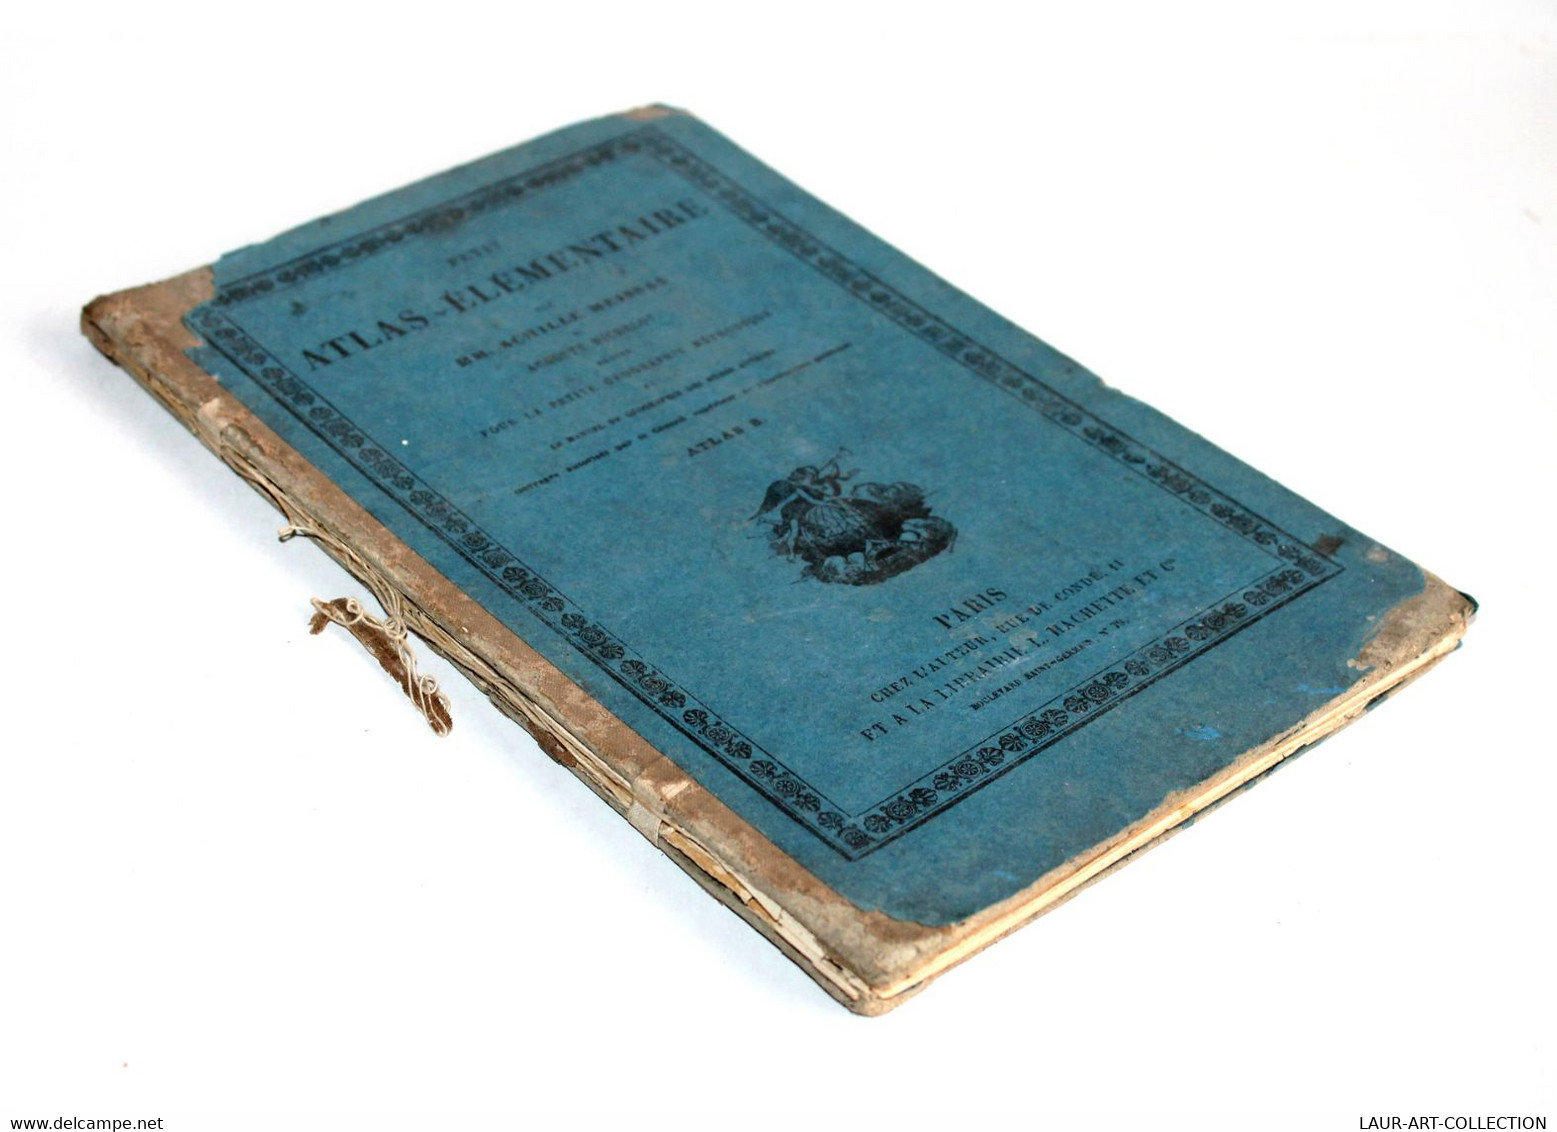 PETIT ATLAS ELEMENTAIRE De MEISSAS, MICHELOT GEOGRAPHIE METHODIQUE 1874 HACHETTE / ANCIEN LIVRE DE COLLECTION (2301.455) - Cartes/Atlas